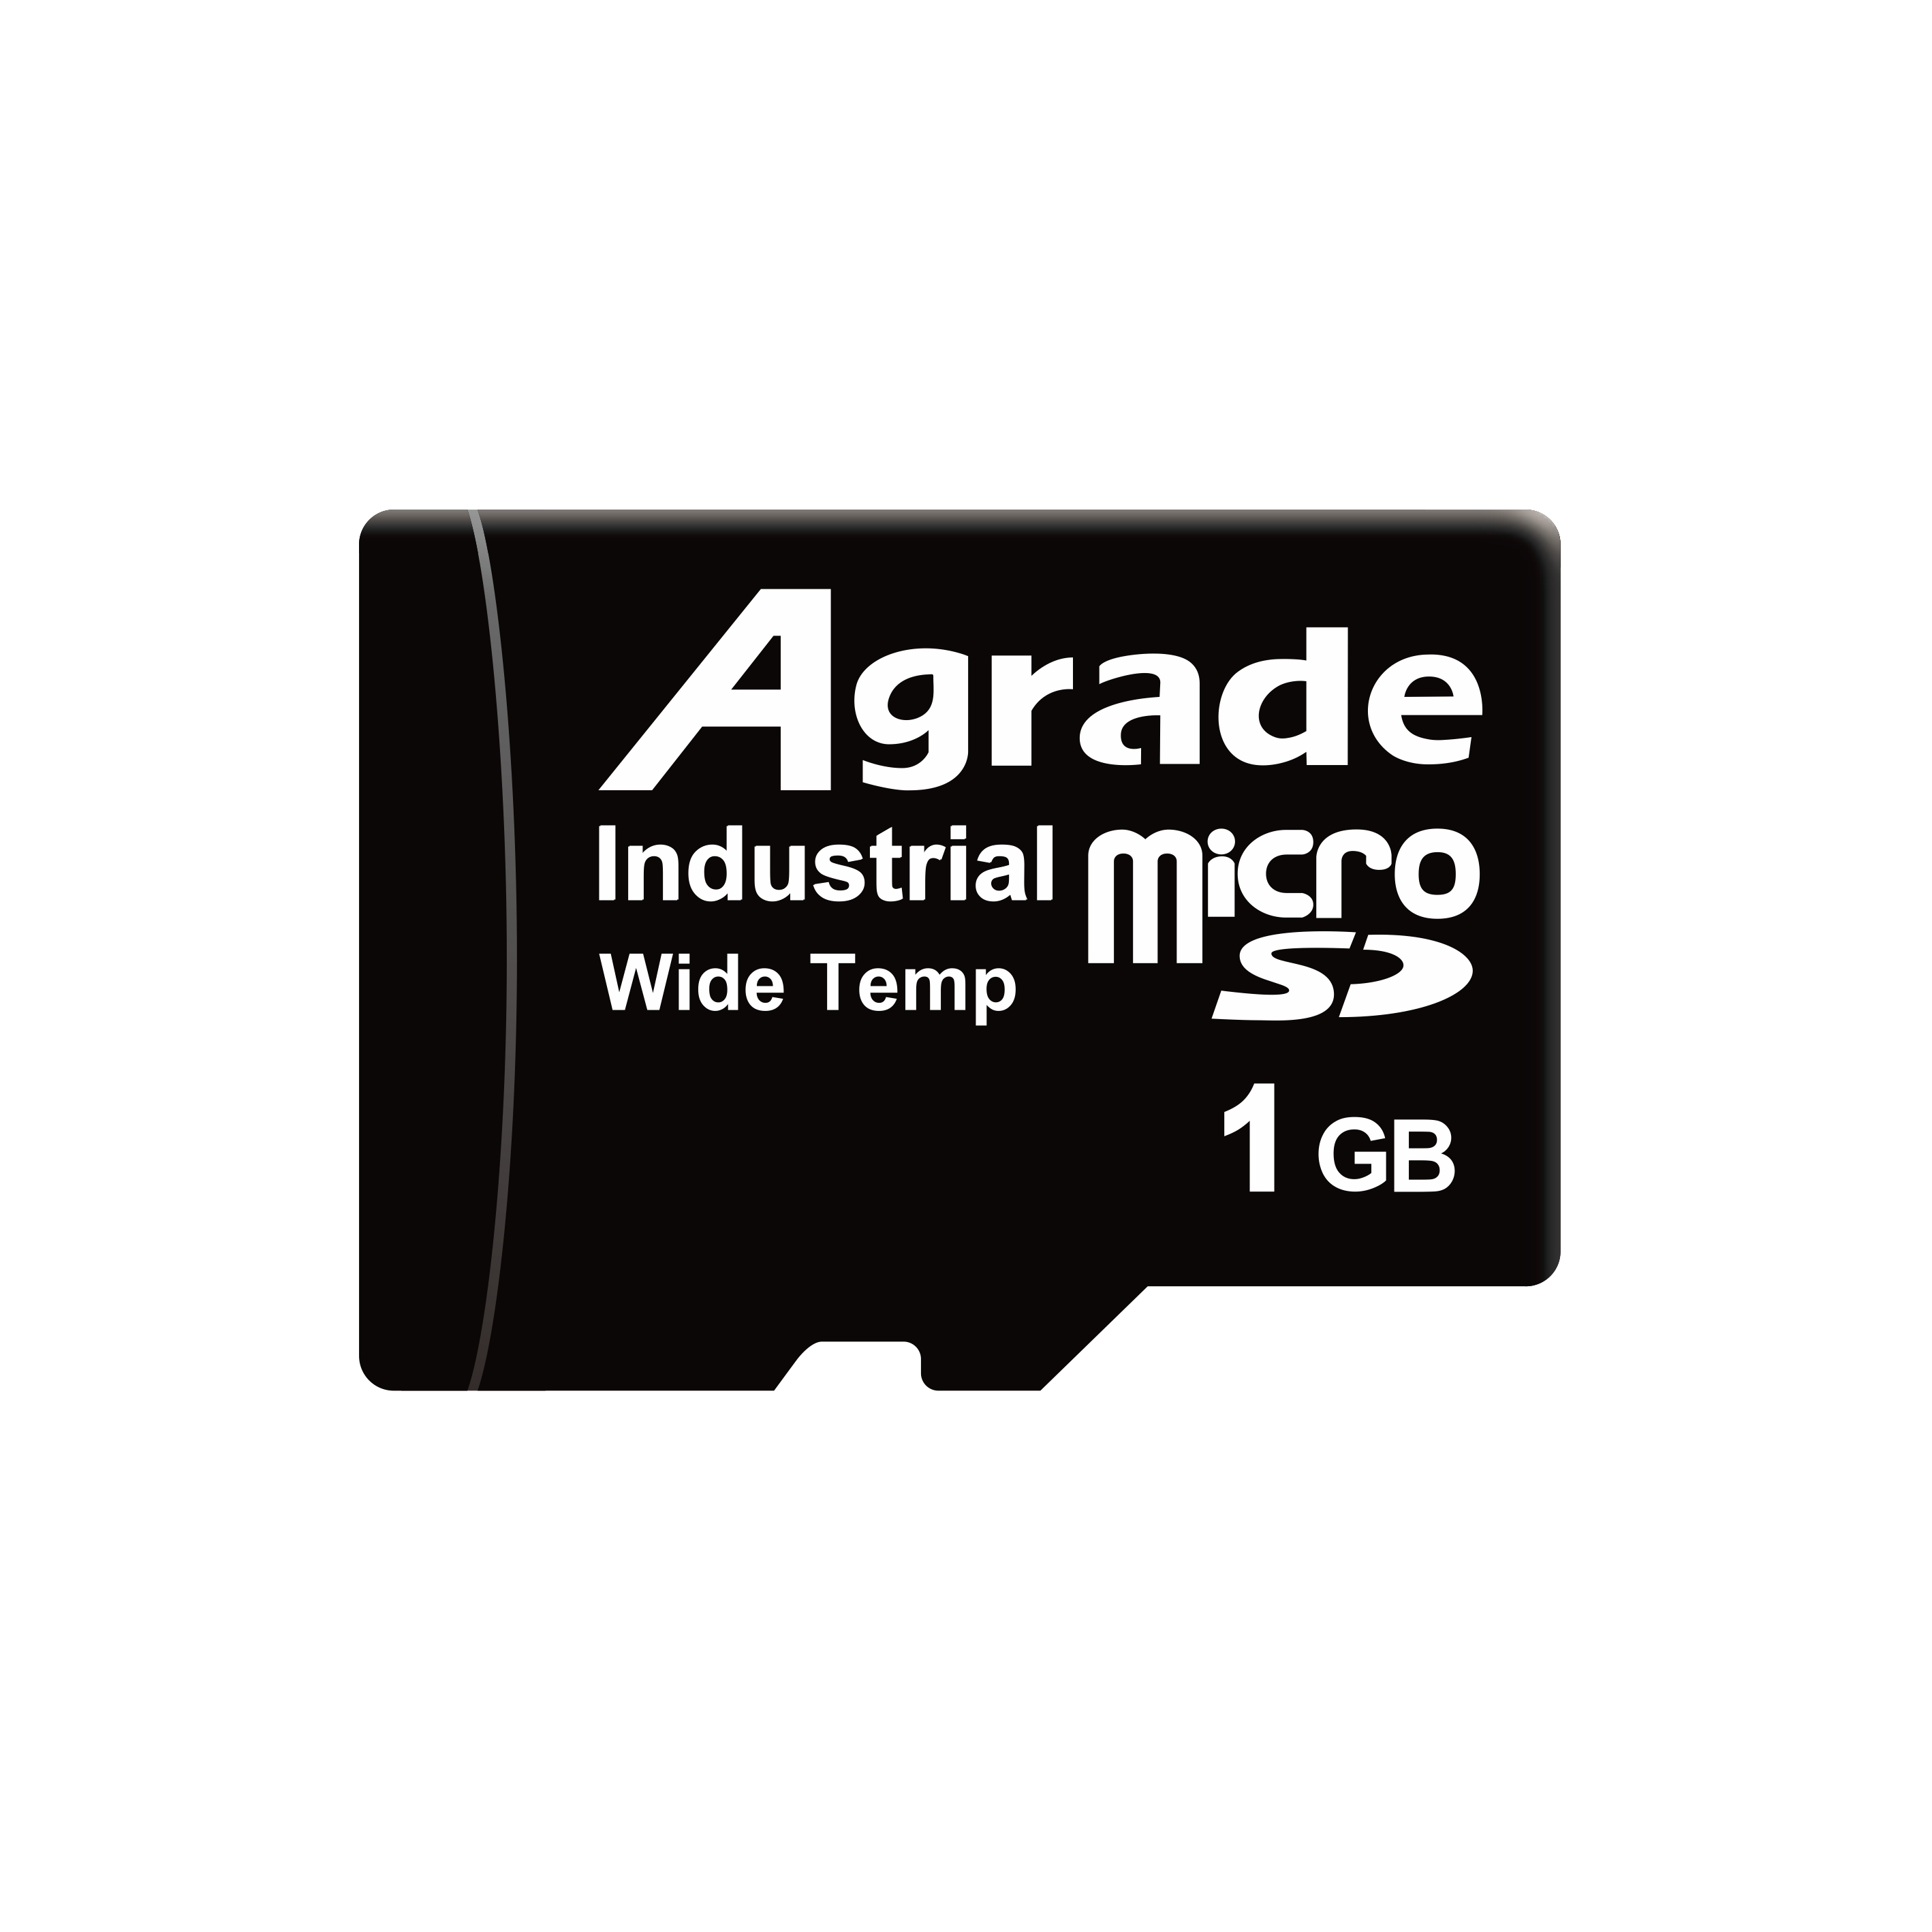 睿达Agrade工业级TF卡即microSD卡